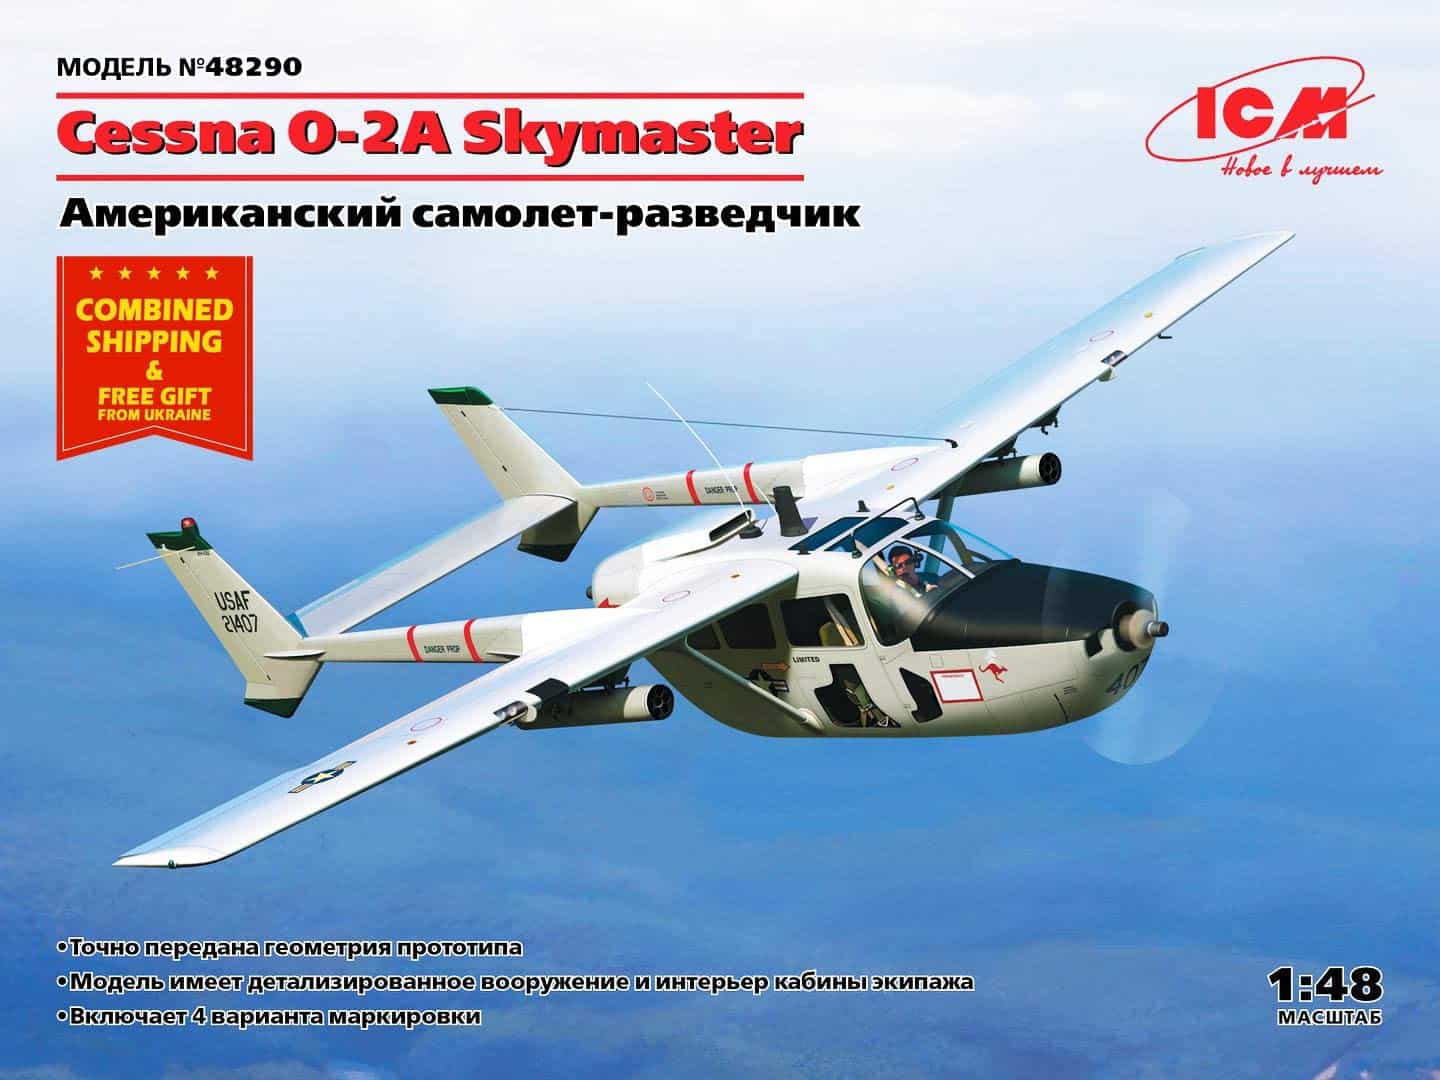 Cessna O-2 Skymaster ICM Review